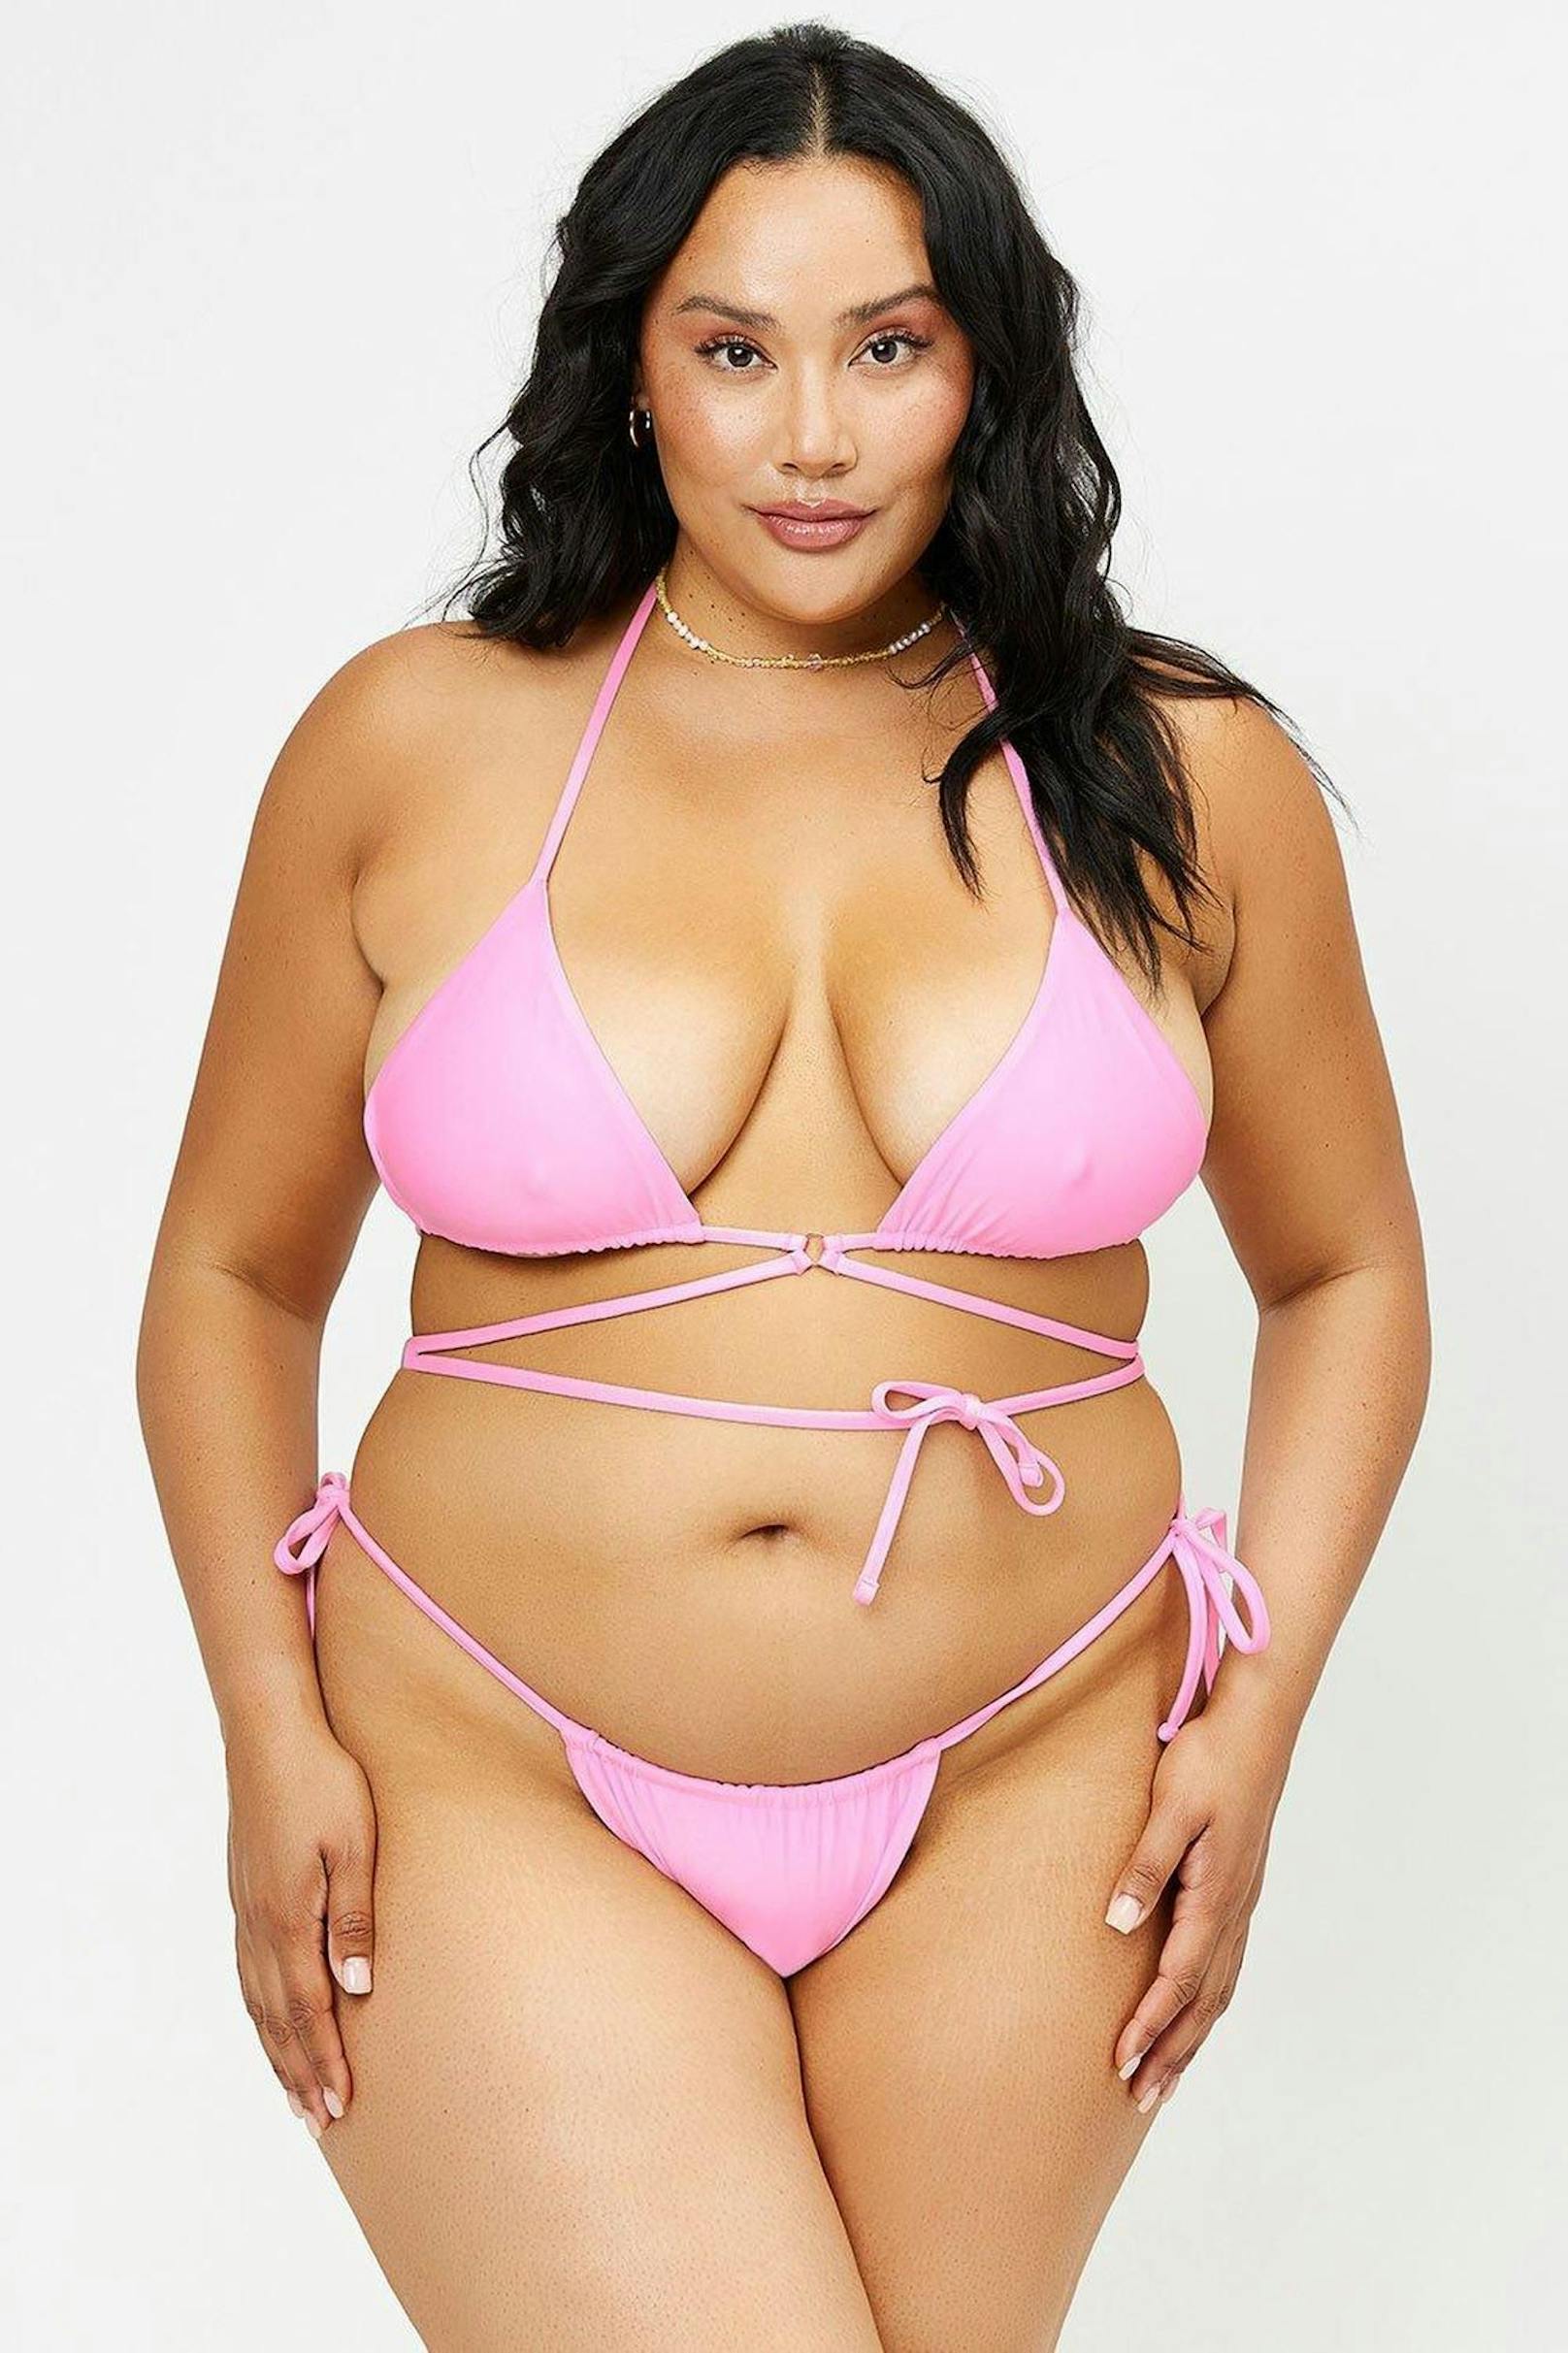 Dieses Bikini-Unterteil ist bis Größe XL und in vielen verschiedenen Farben erhältlich: Bikini Unterteil "Tia" 98 Euro von <a href="https://frankiesbikinis.com/products/tia-satin-string-bikini-bottom-90s-pink?variant=39335514439749">Frankie’s Bikinis</a>